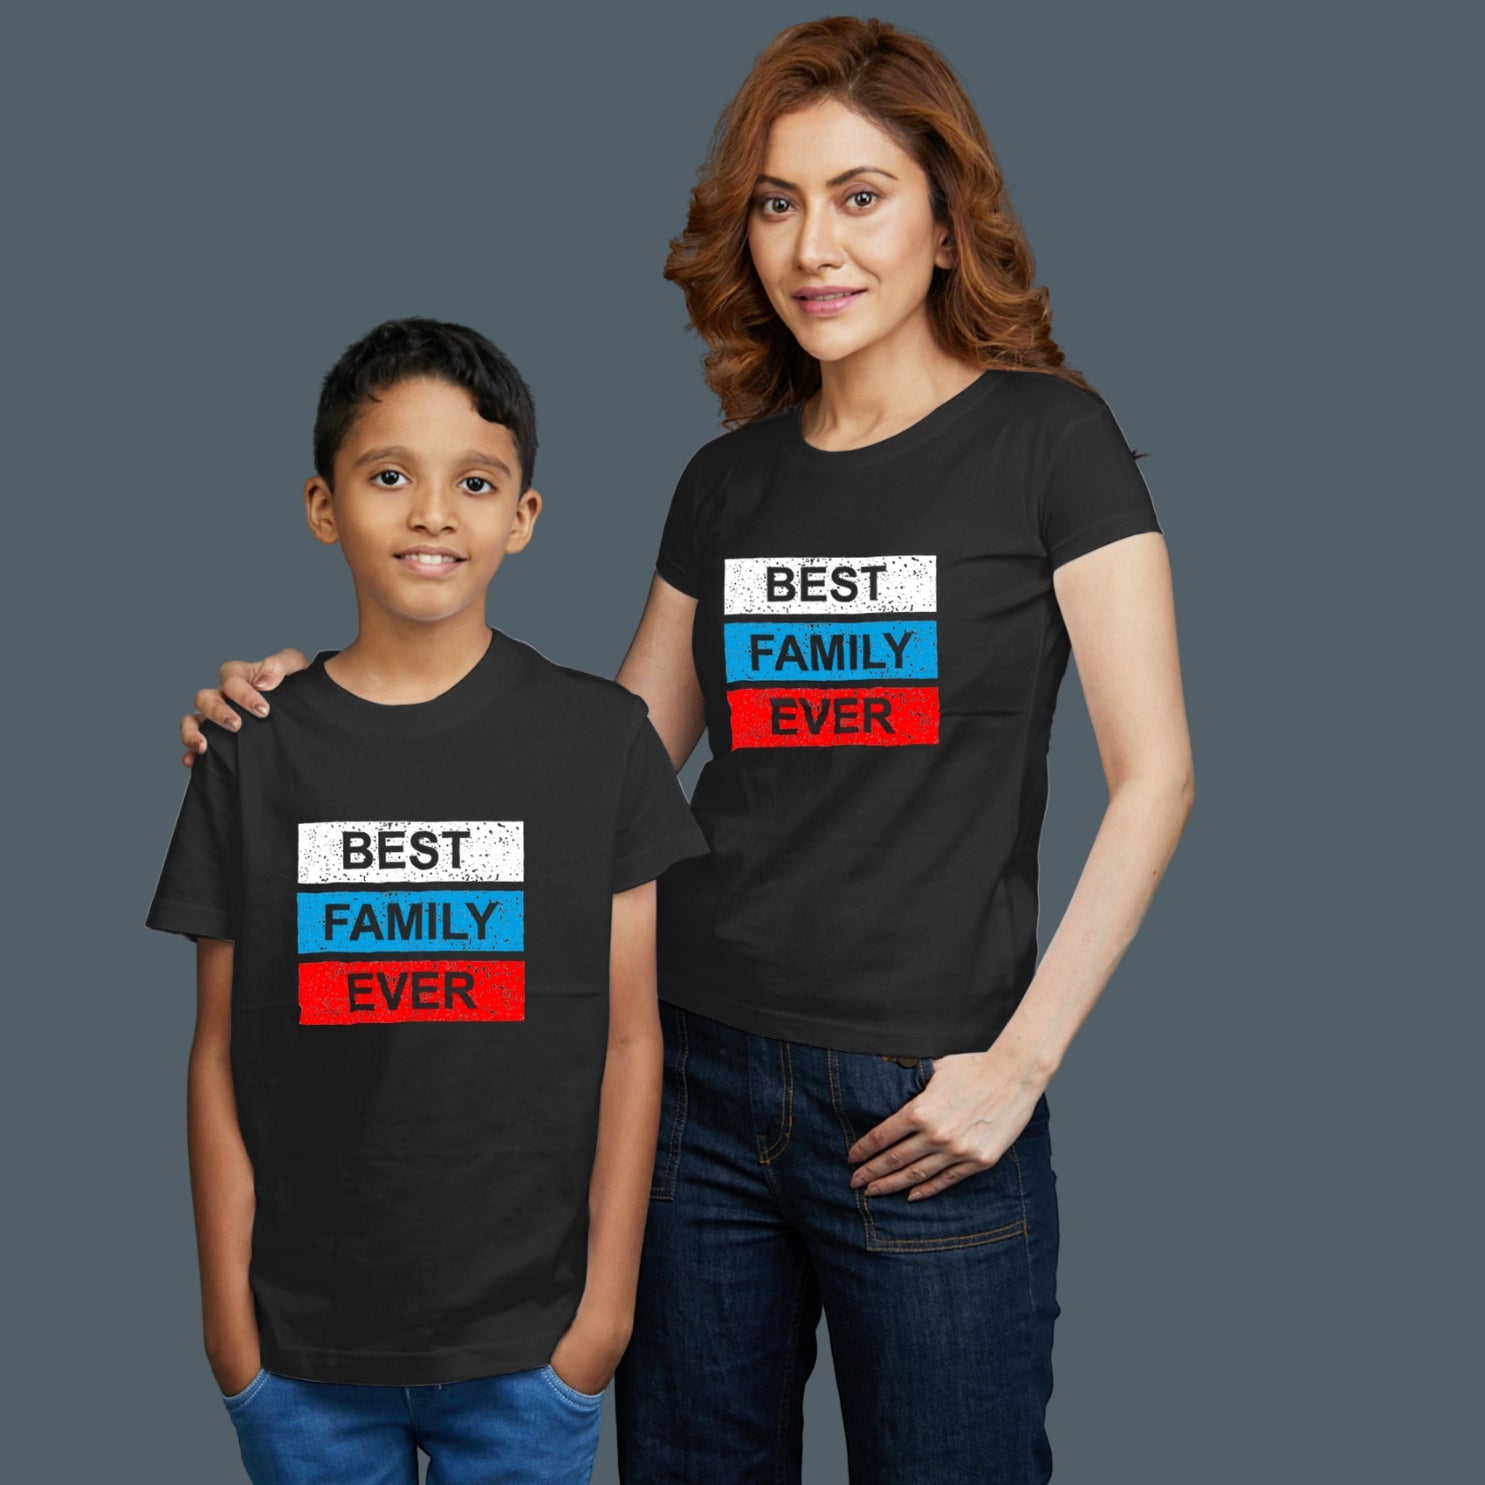 Family of 2 t shirt for Mom Son in Black Colour- Best Family Variant